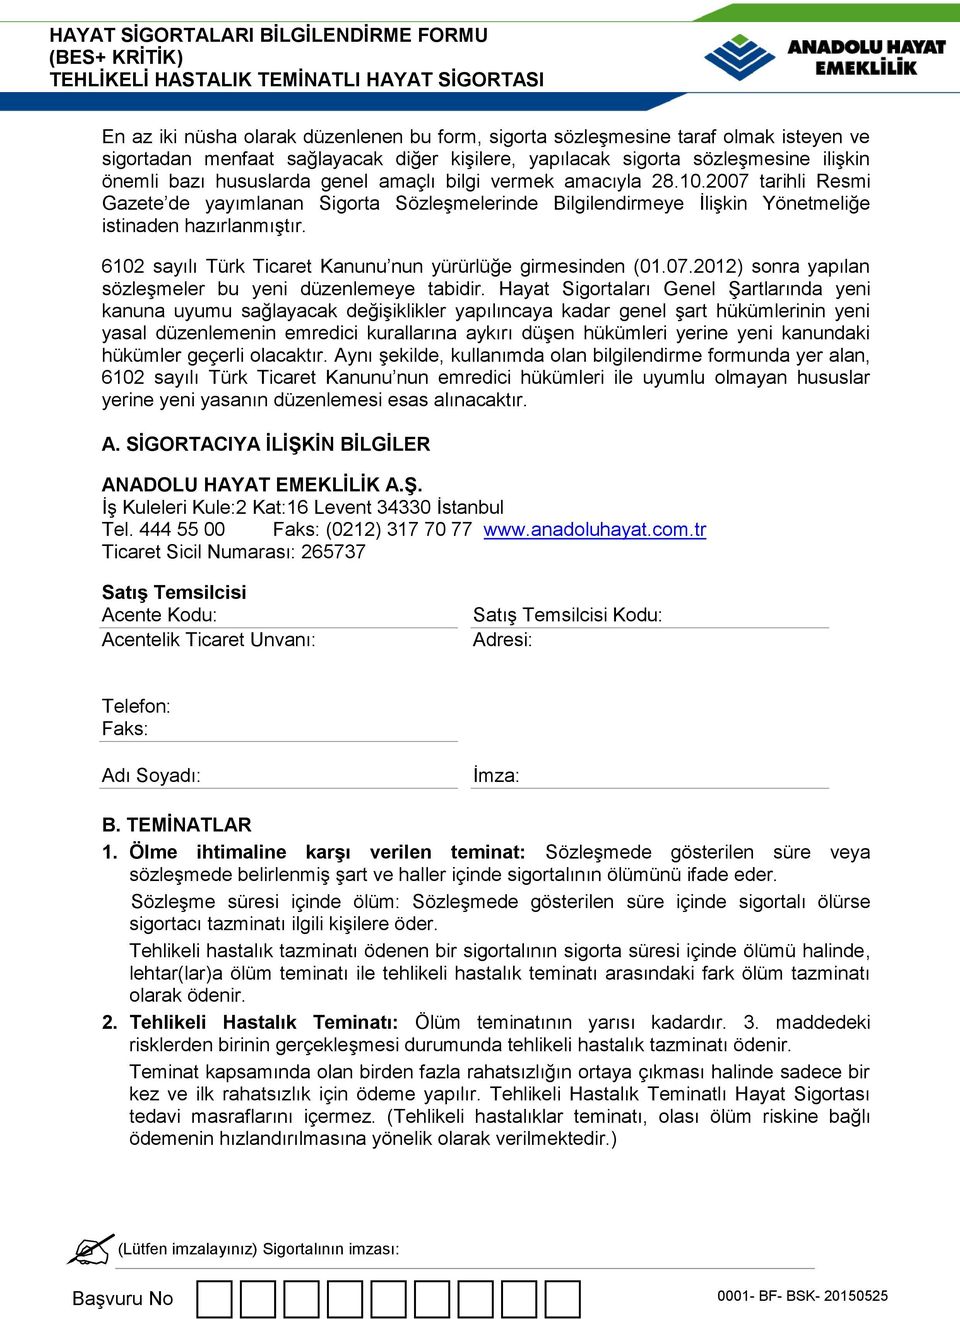 6102 sayılı Türk Ticaret Kanunu nun yürürlüğe girmesinden (01.07.2012) sonra yapılan sözleşmeler bu yeni düzenlemeye tabidir.